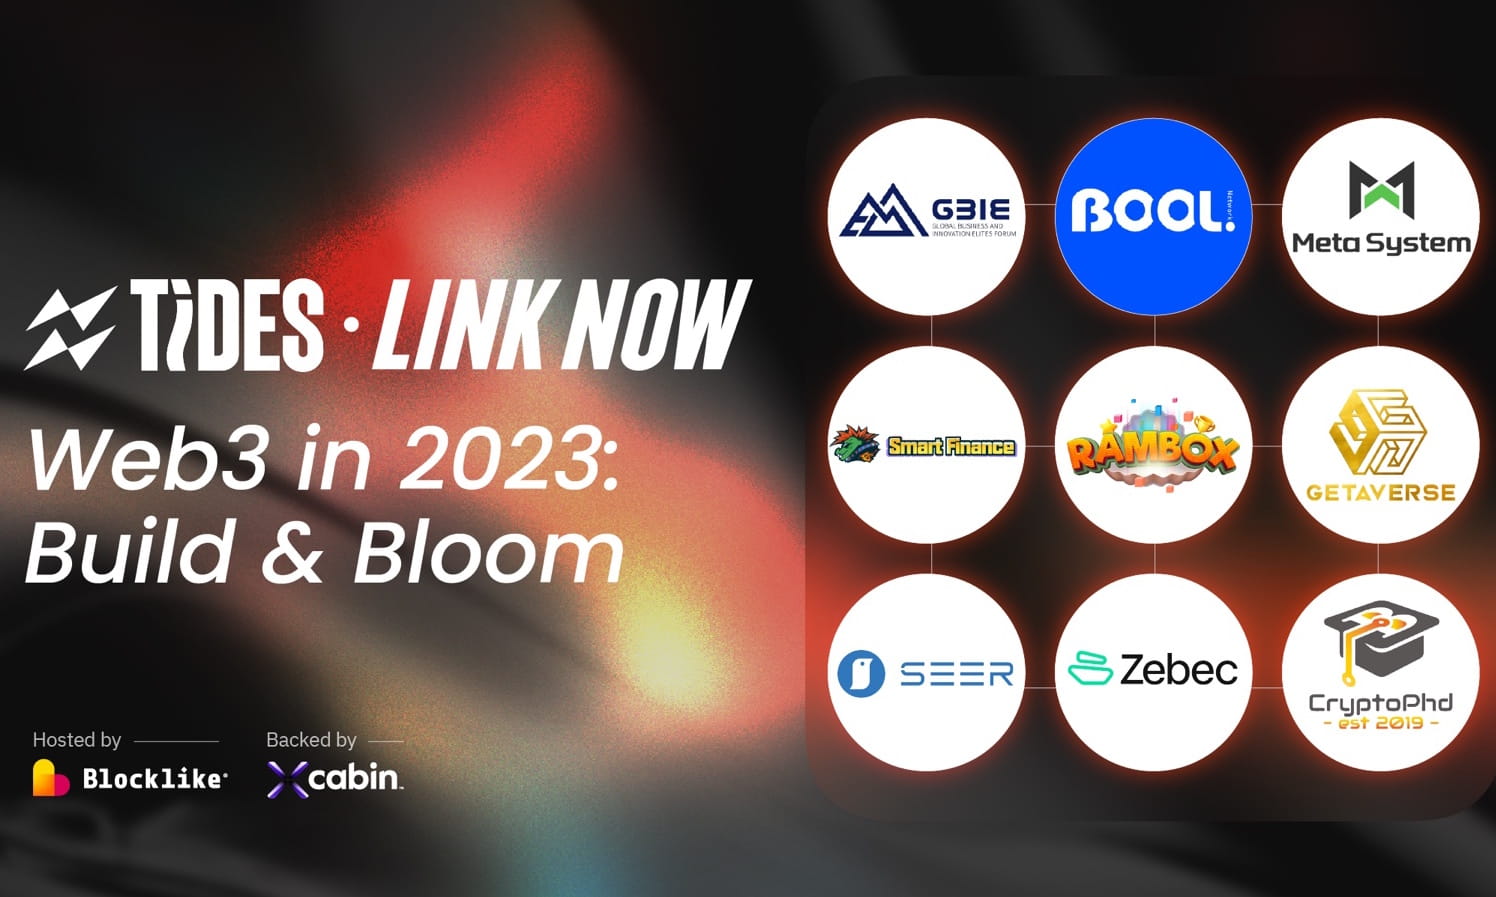 Blocklike Link Now-Web3 in 2023: Build & Bloom